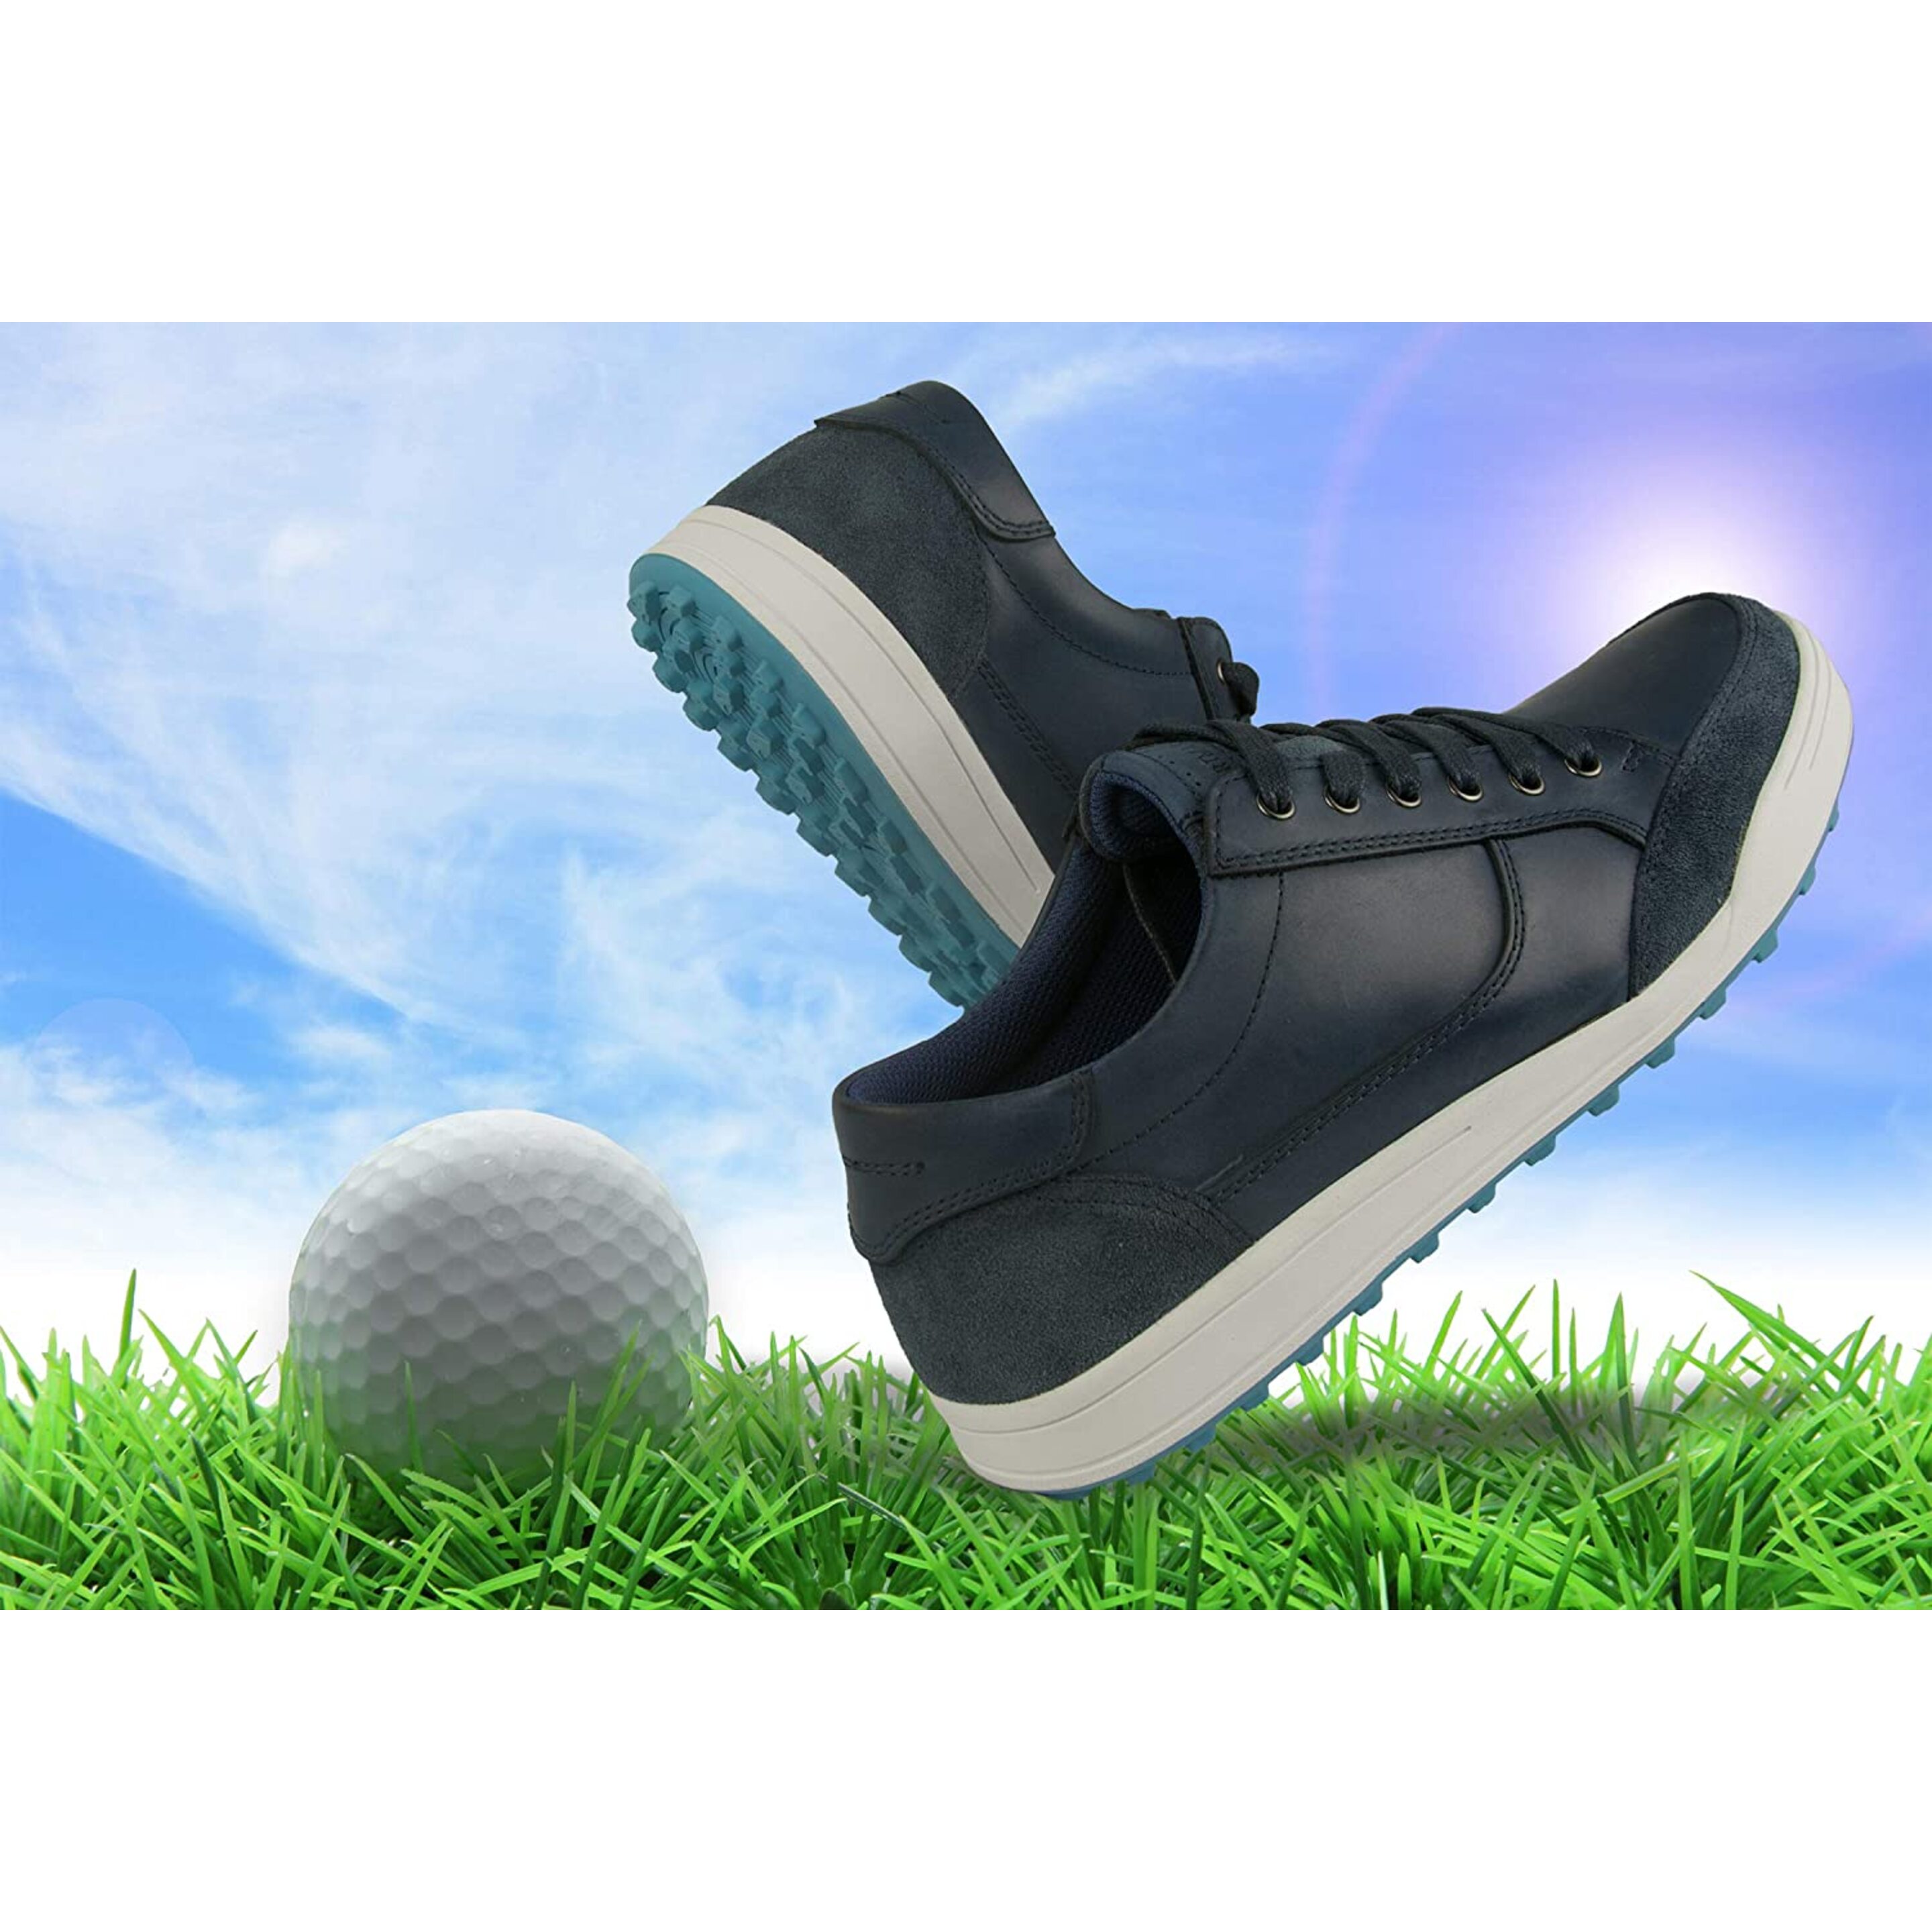 Zerimar Zapatos De Golf Hombre |zapatos Golf Piel | Zapatos Hombre Deportivos | Zapatillas De Golf